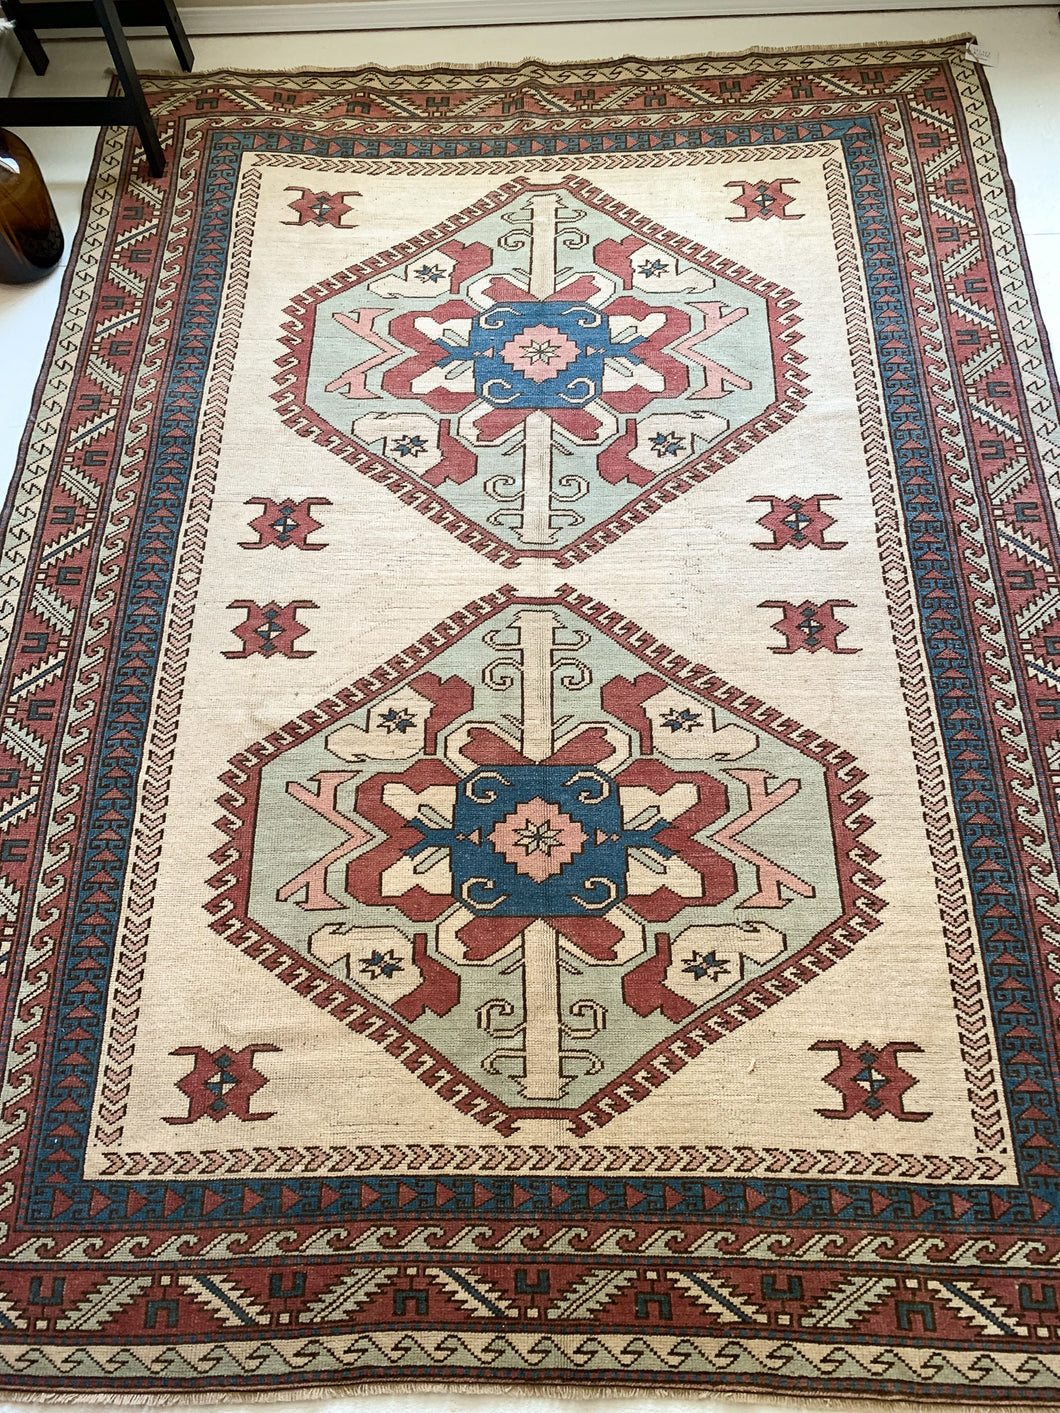 A1055 - 6.6' x 8.8' Vintage Turkish Area Rug